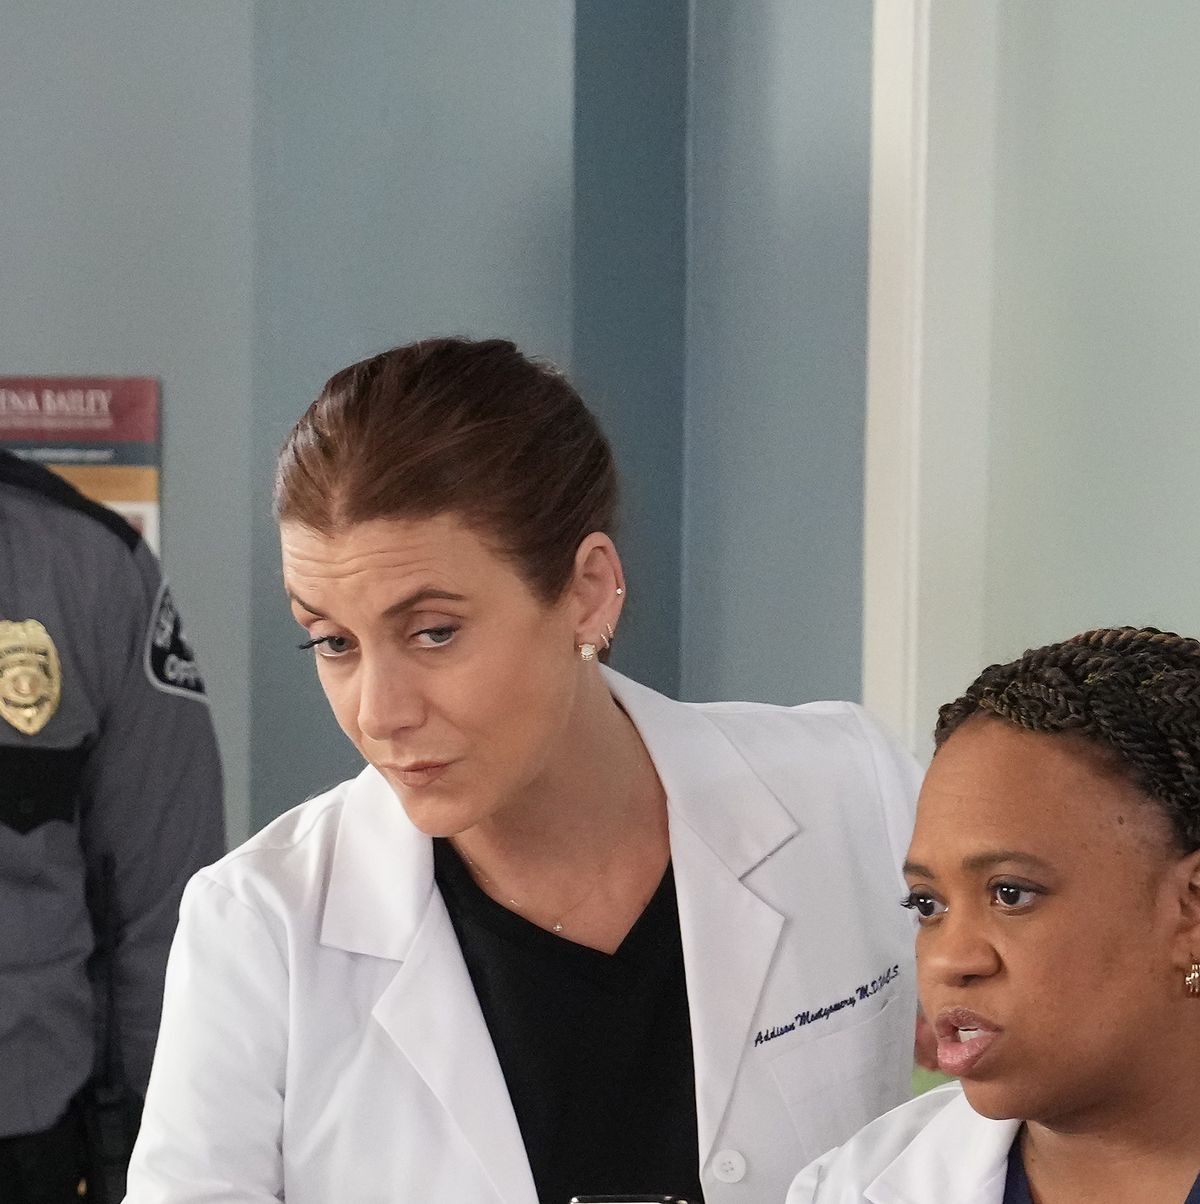 Grey's Anatomy Cliffhanger in Abortion Episode: Kim Raver